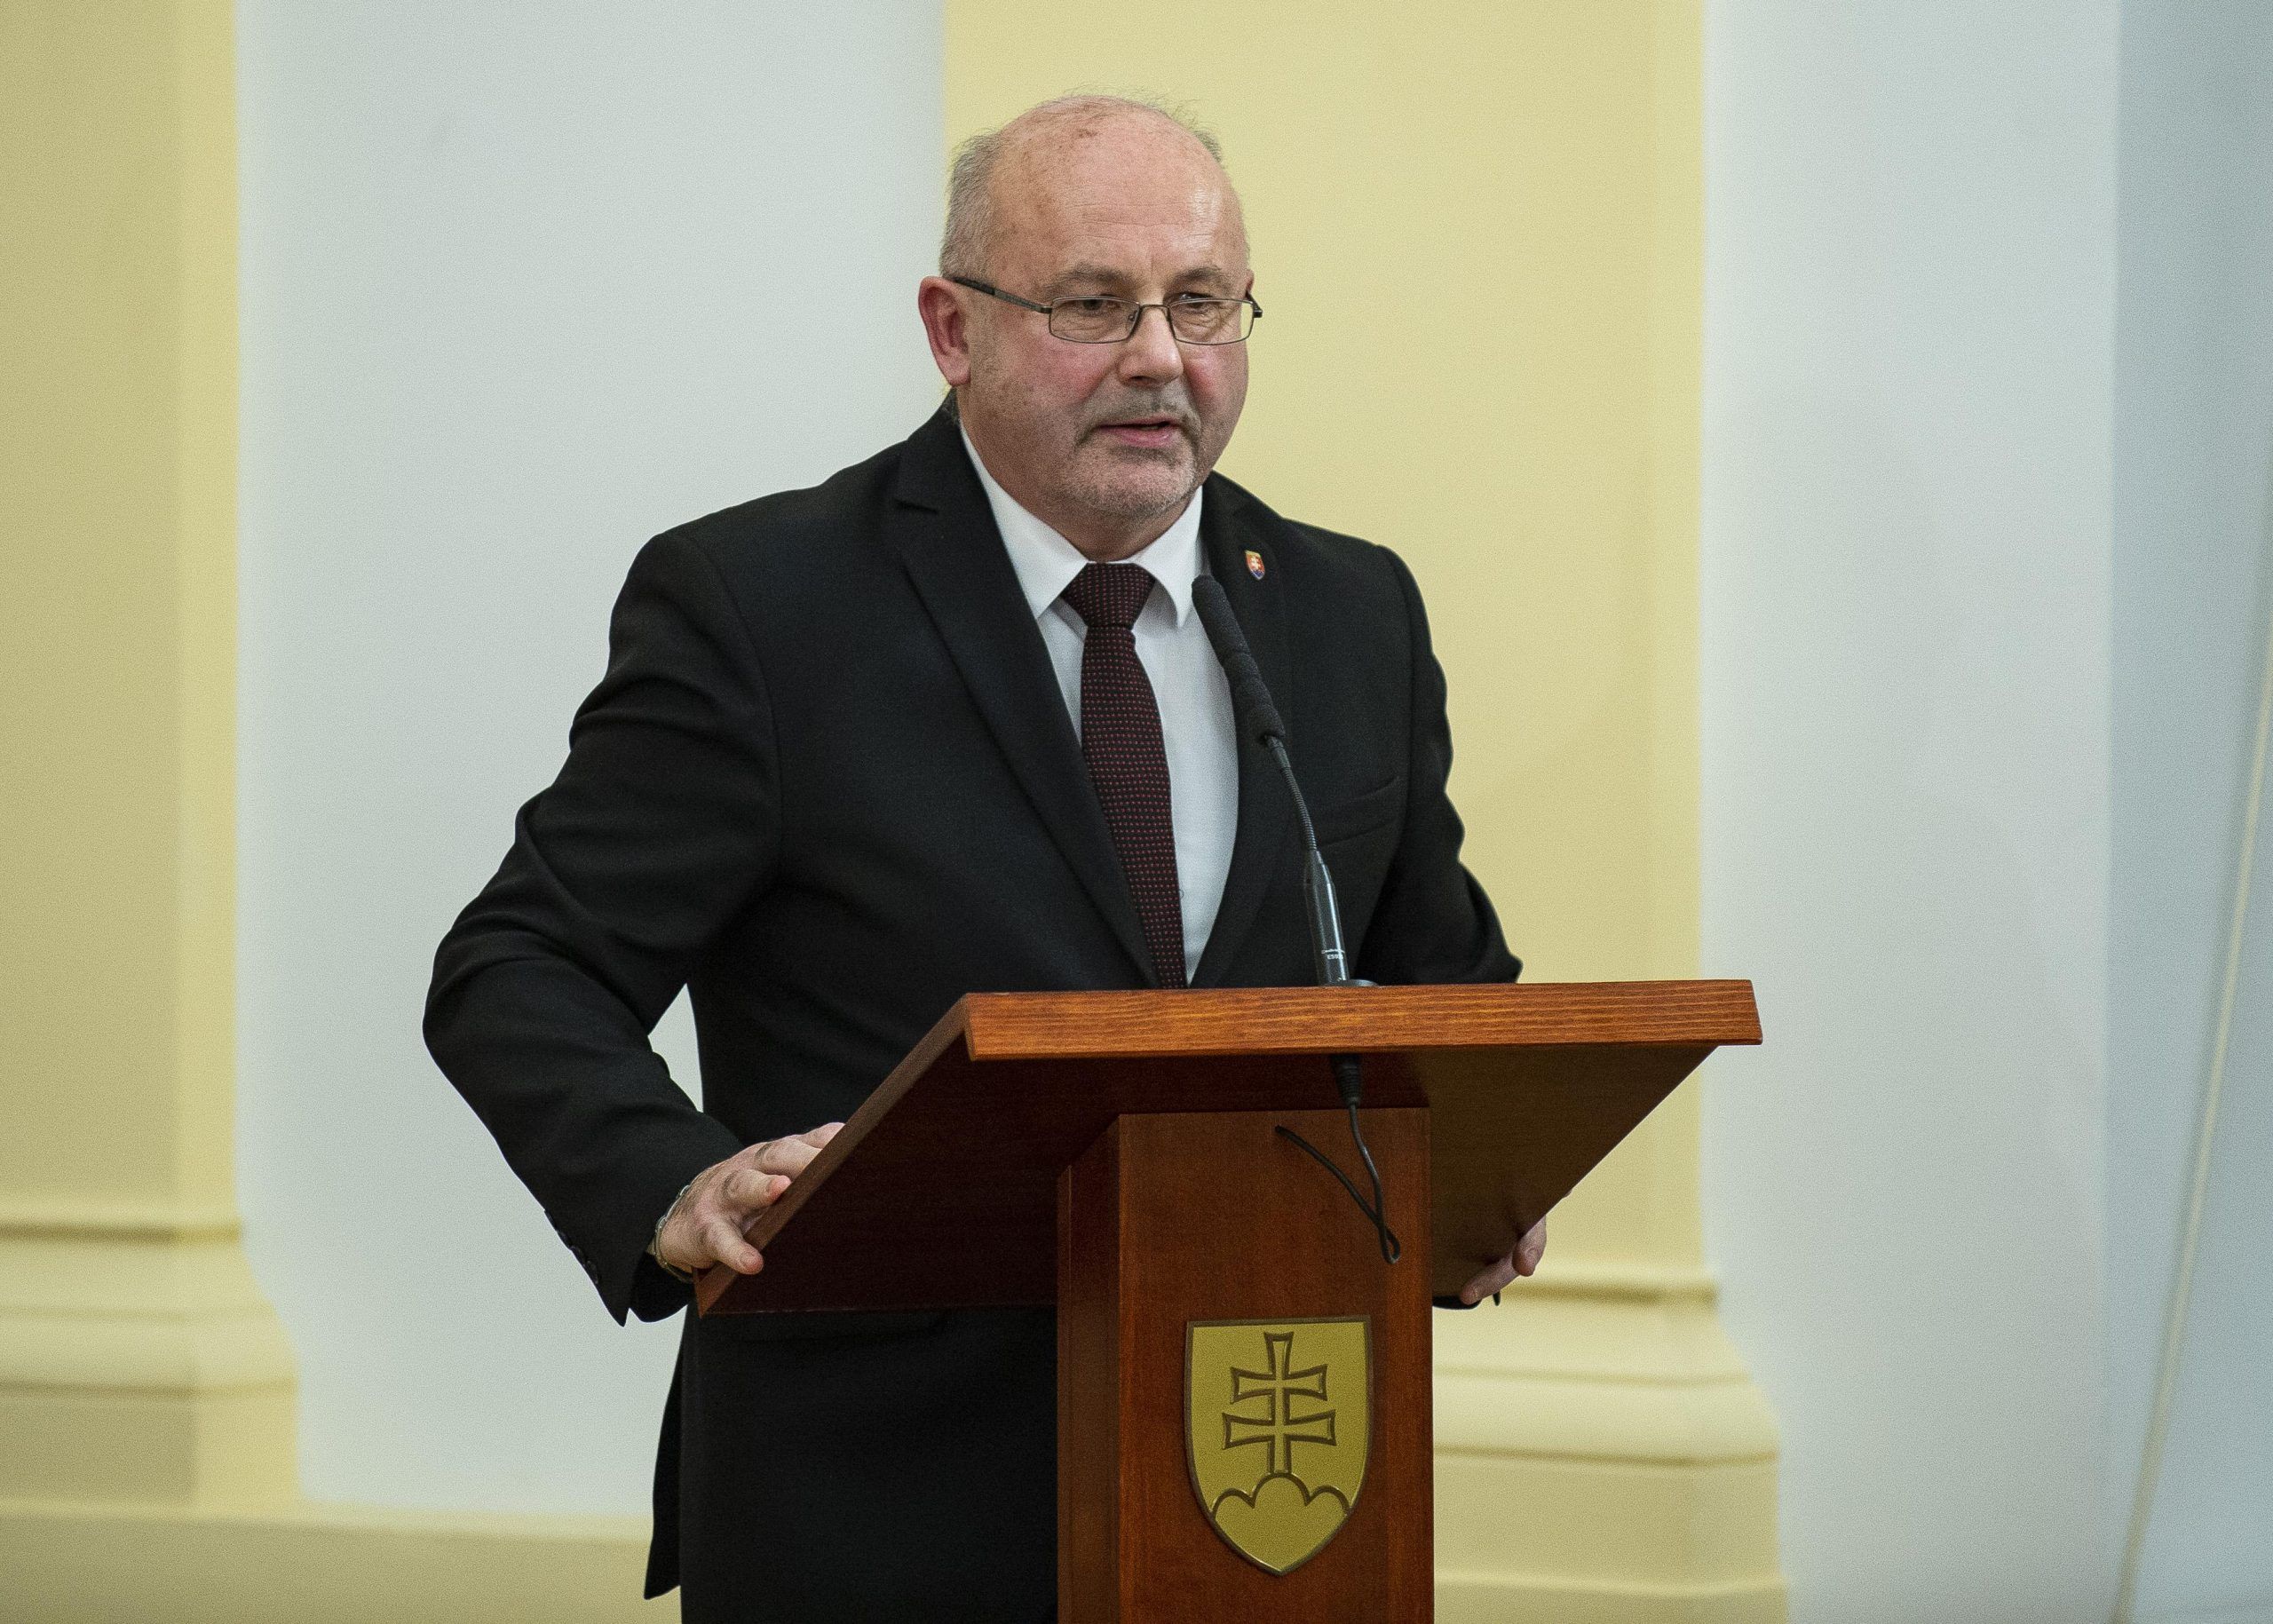 Predseda súdu Pavol Naď sa zúčastnil na oslavách 30. výročia Ústavného súdu Slovenskej republiky. Na slávnostnom podujatí vystúpil aj s príhovorom